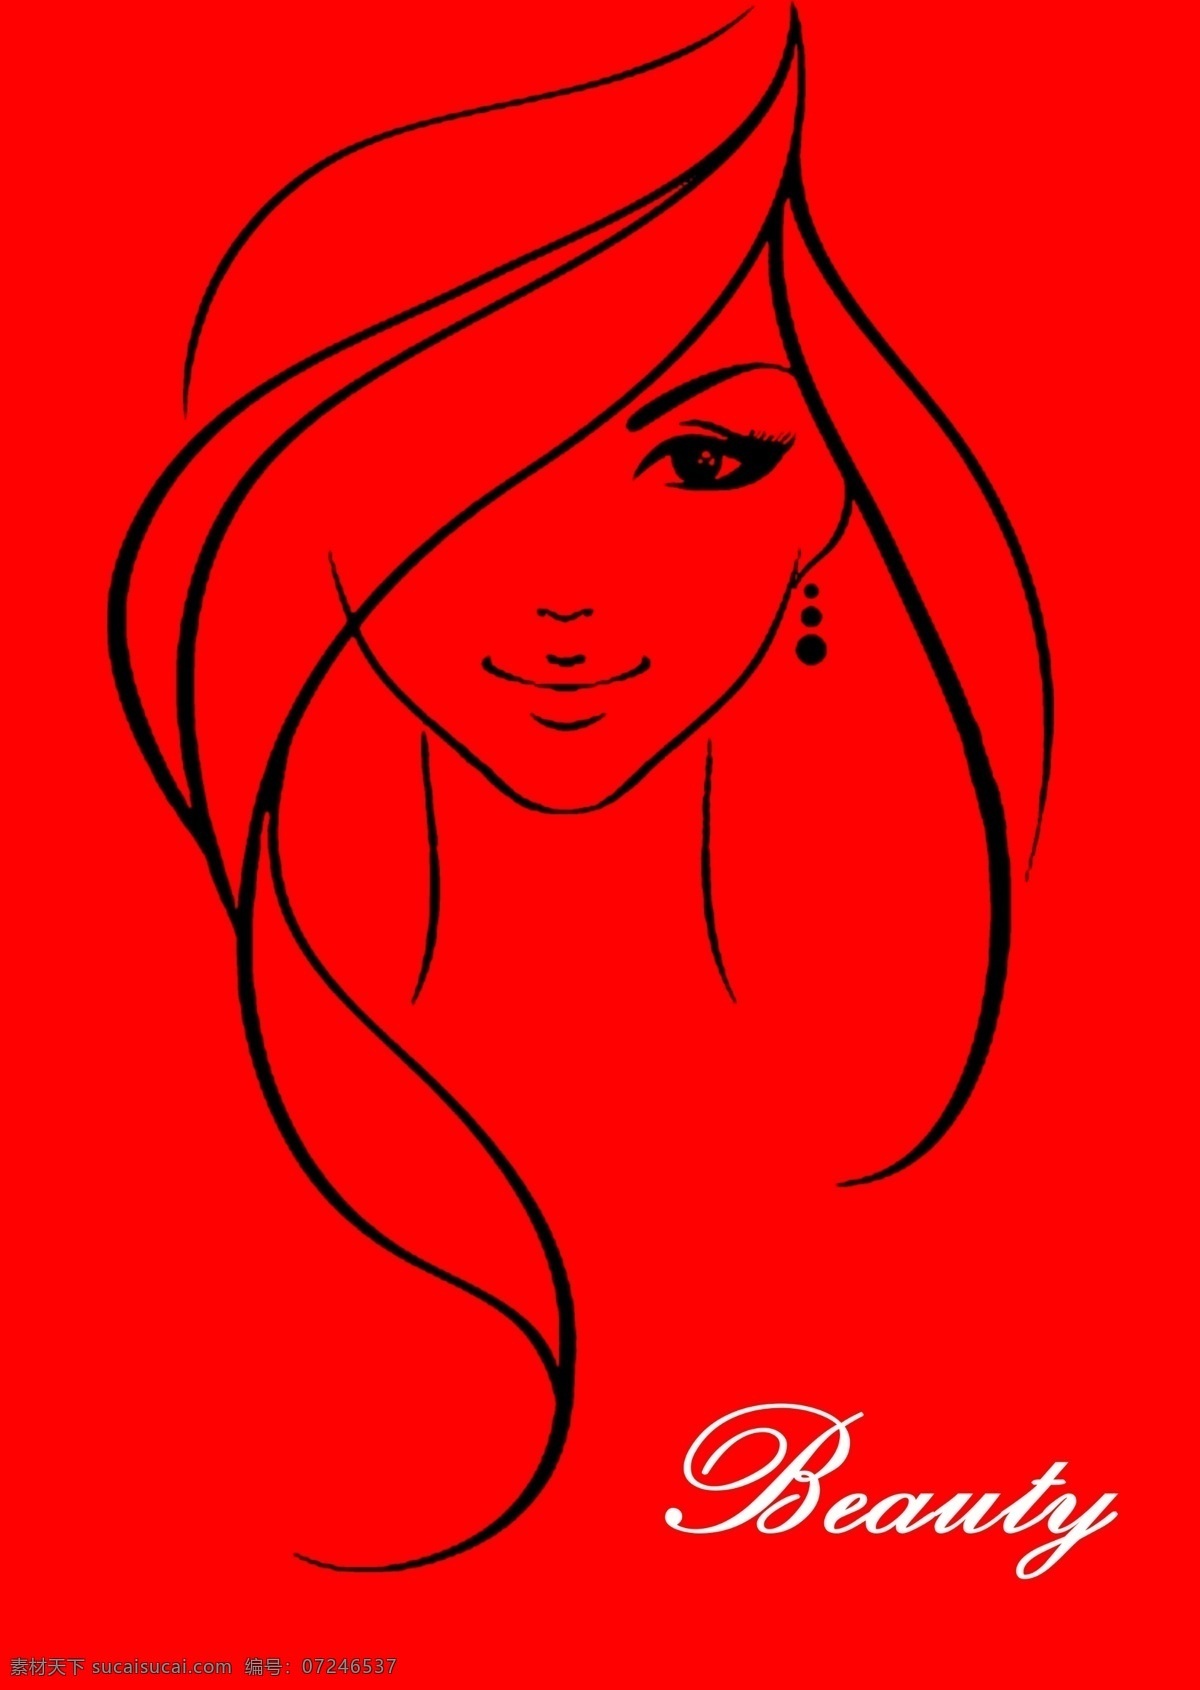 时尚 美女 头像 红色背景 线条 美人图 分层 源文件